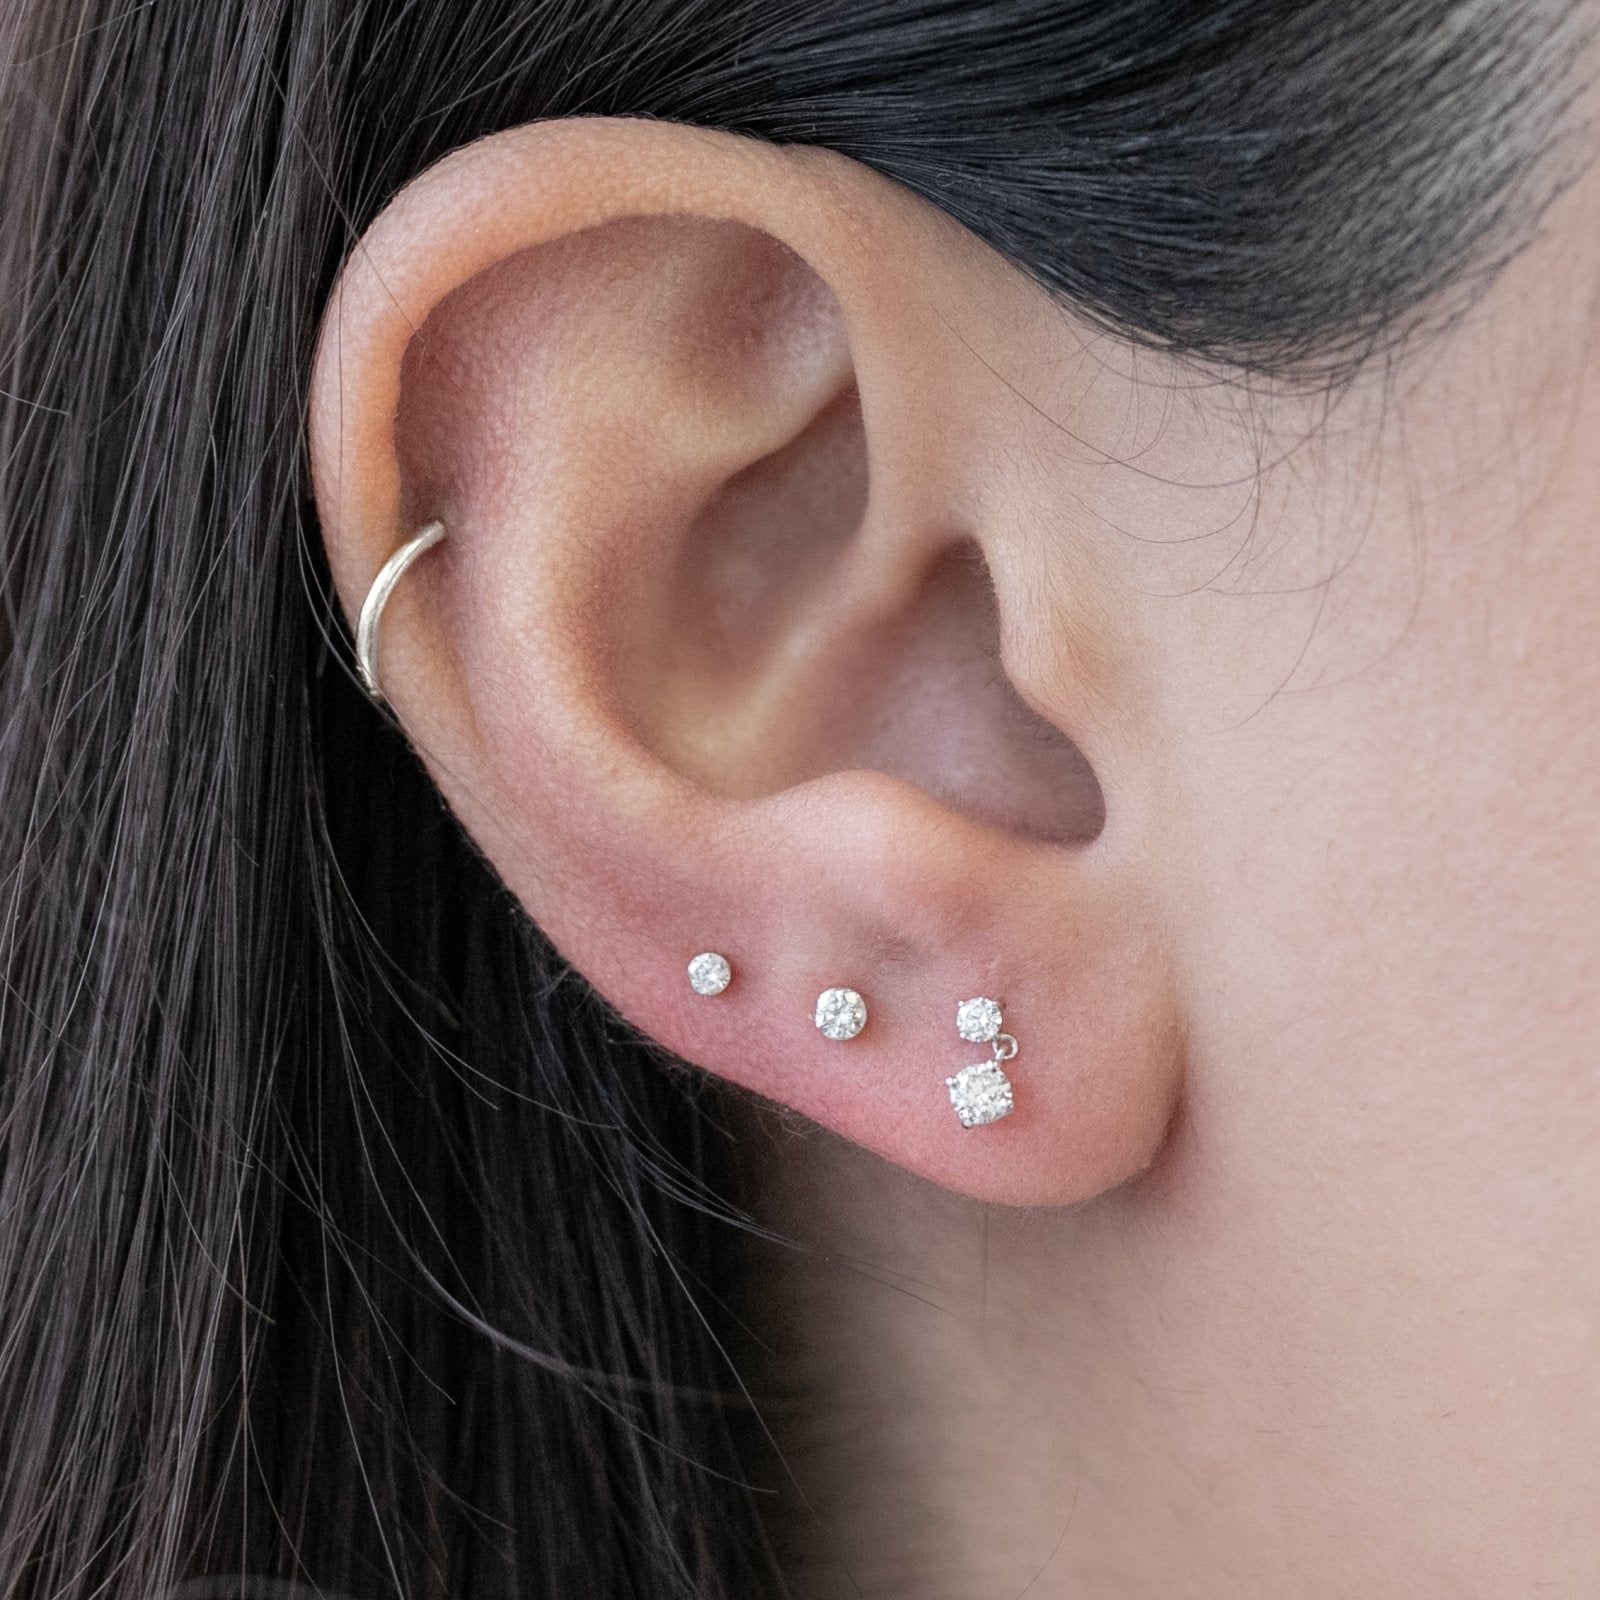 Double Diamond Drop Flat Back Stud Earrings Estella Collection #product_description# 18351 14k April Birthstone Birthstone #tag4# #tag5# #tag6# #tag7# #tag8# #tag9# #tag10# 5MM